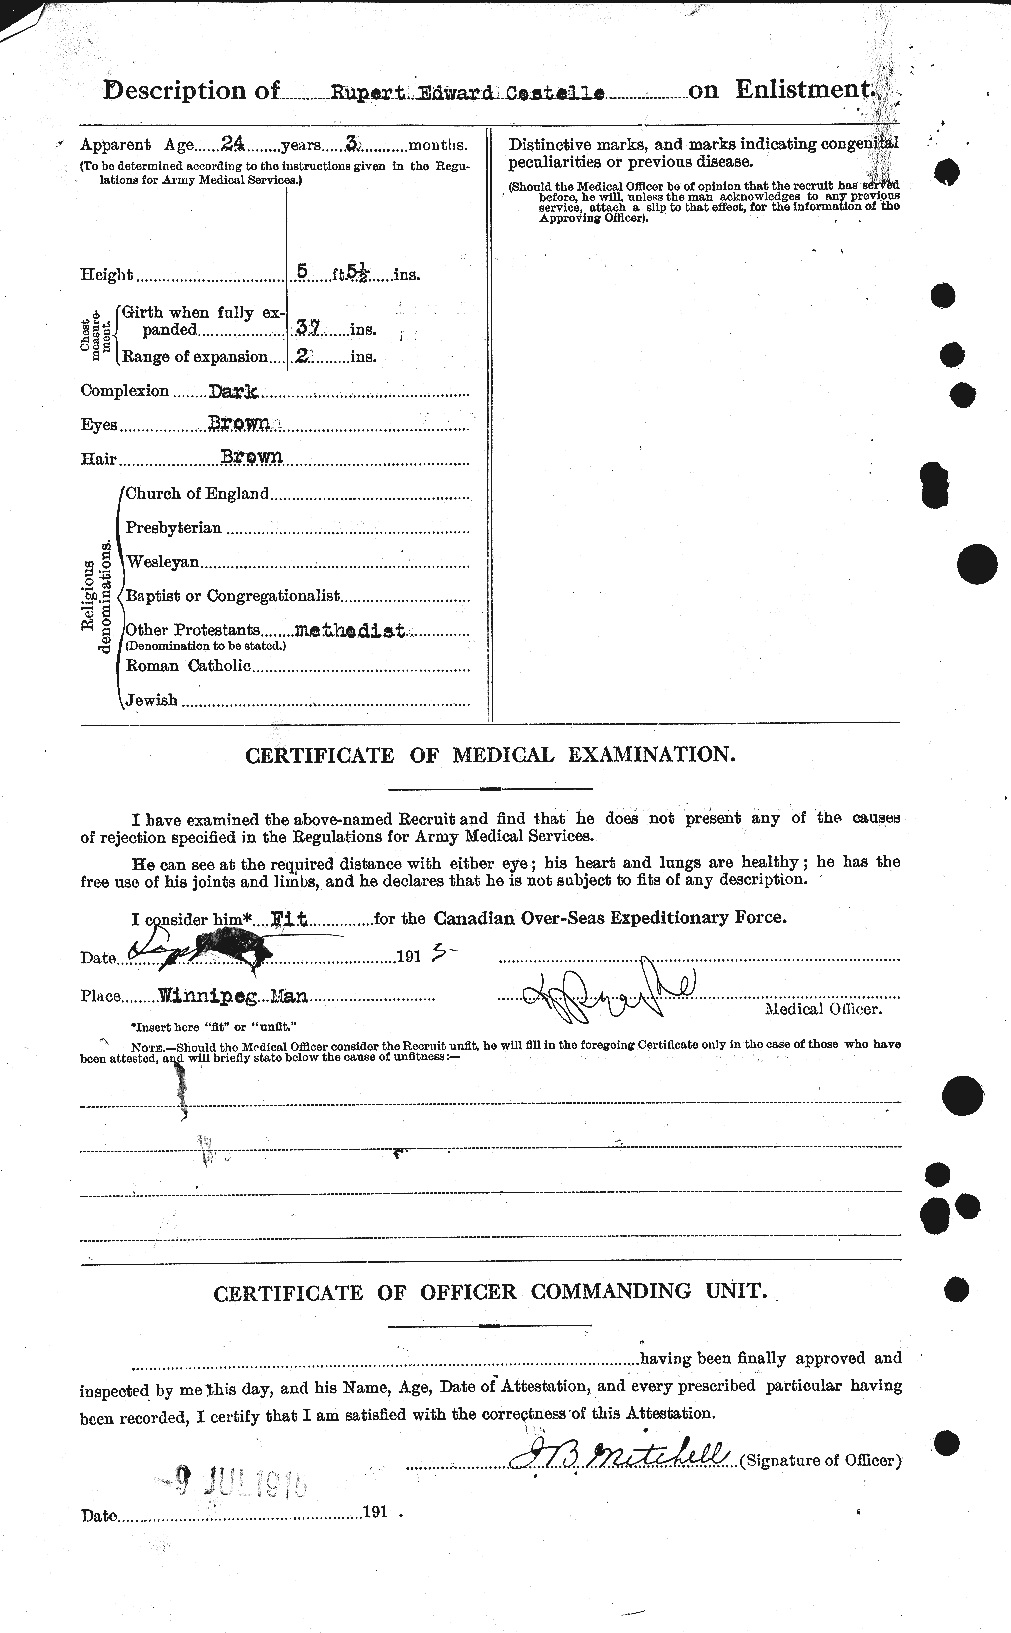 Dossiers du Personnel de la Première Guerre mondiale - CEC 057247b